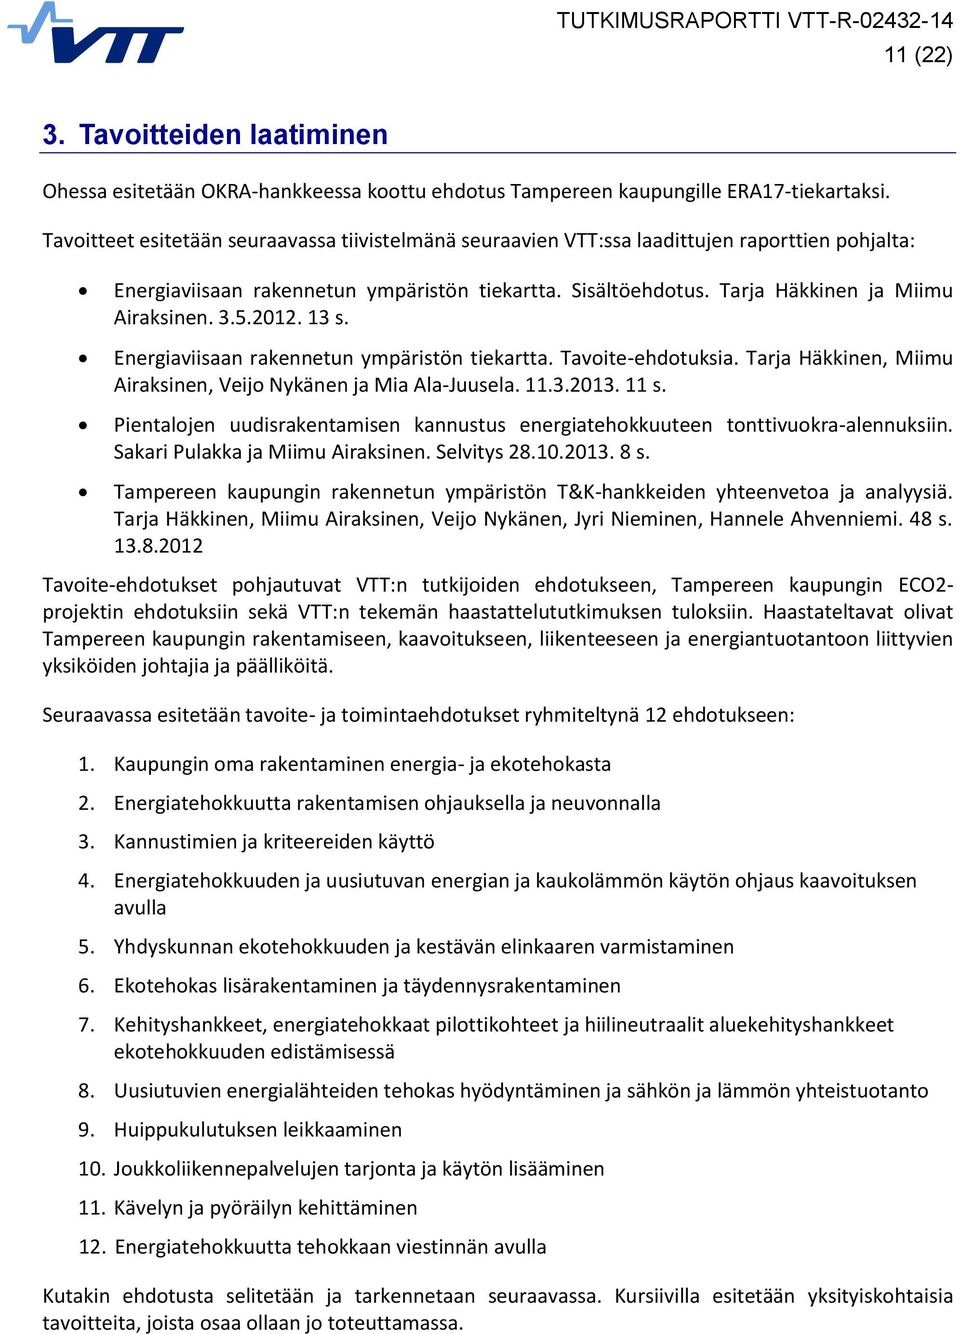 3.5.2012. 13 s. Energiaviisaan rakennetun ympäristön tiekartta. Tavoite-ehdotuksia. Tarja Häkkinen, Miimu Airaksinen, Veijo Nykänen ja Mia Ala-Juusela. 11.3.2013. 11 s.